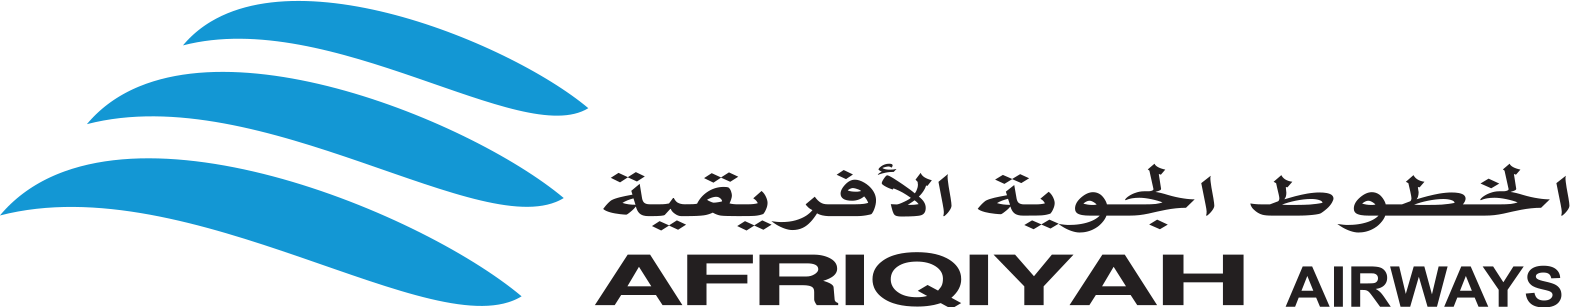 cropped cropped Logo di Afriqiyah Airways